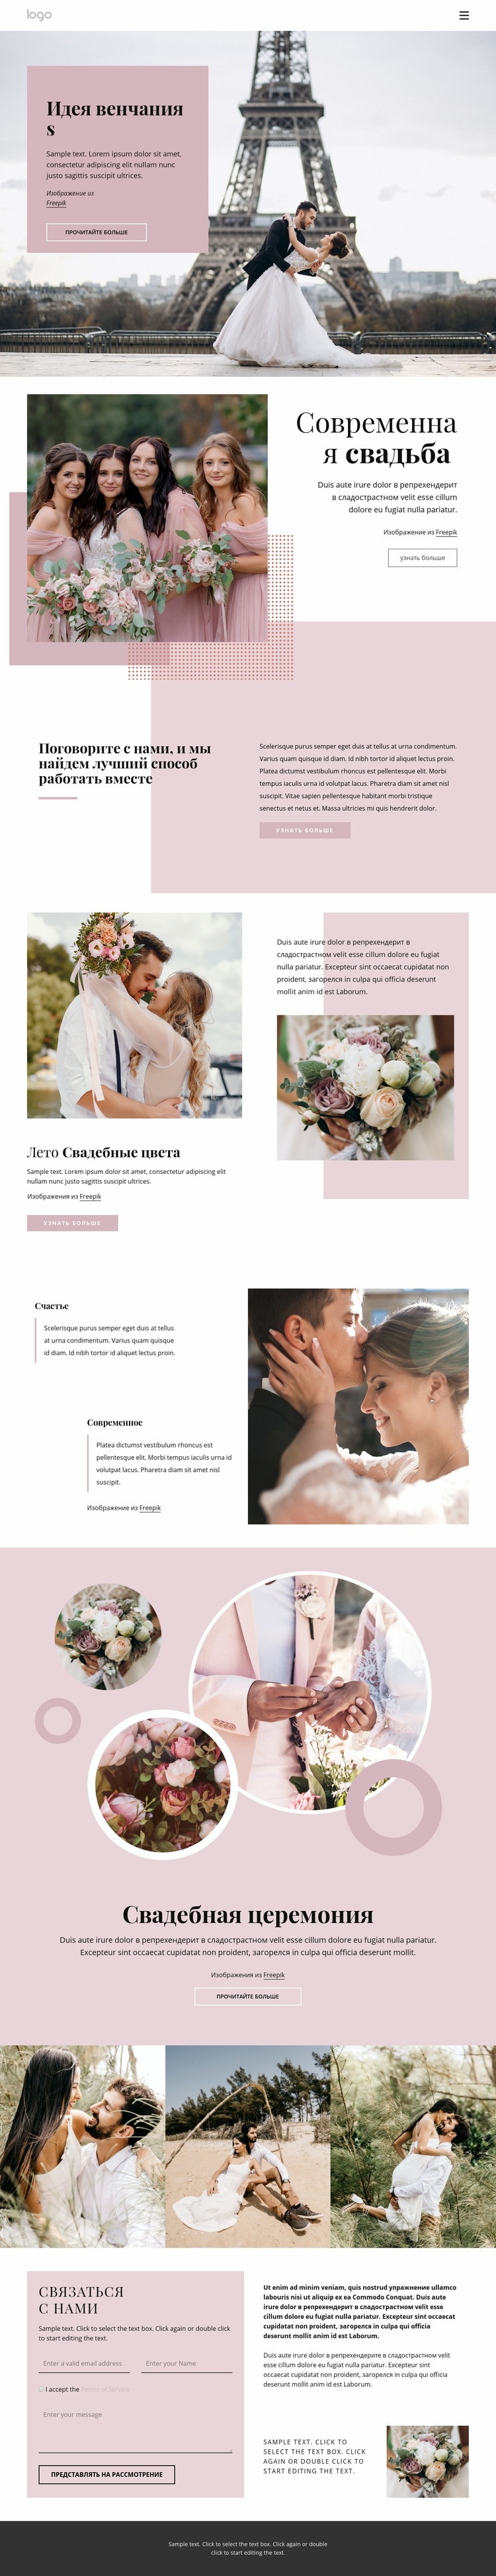 Уникальная свадебная церемония Дизайн сайта